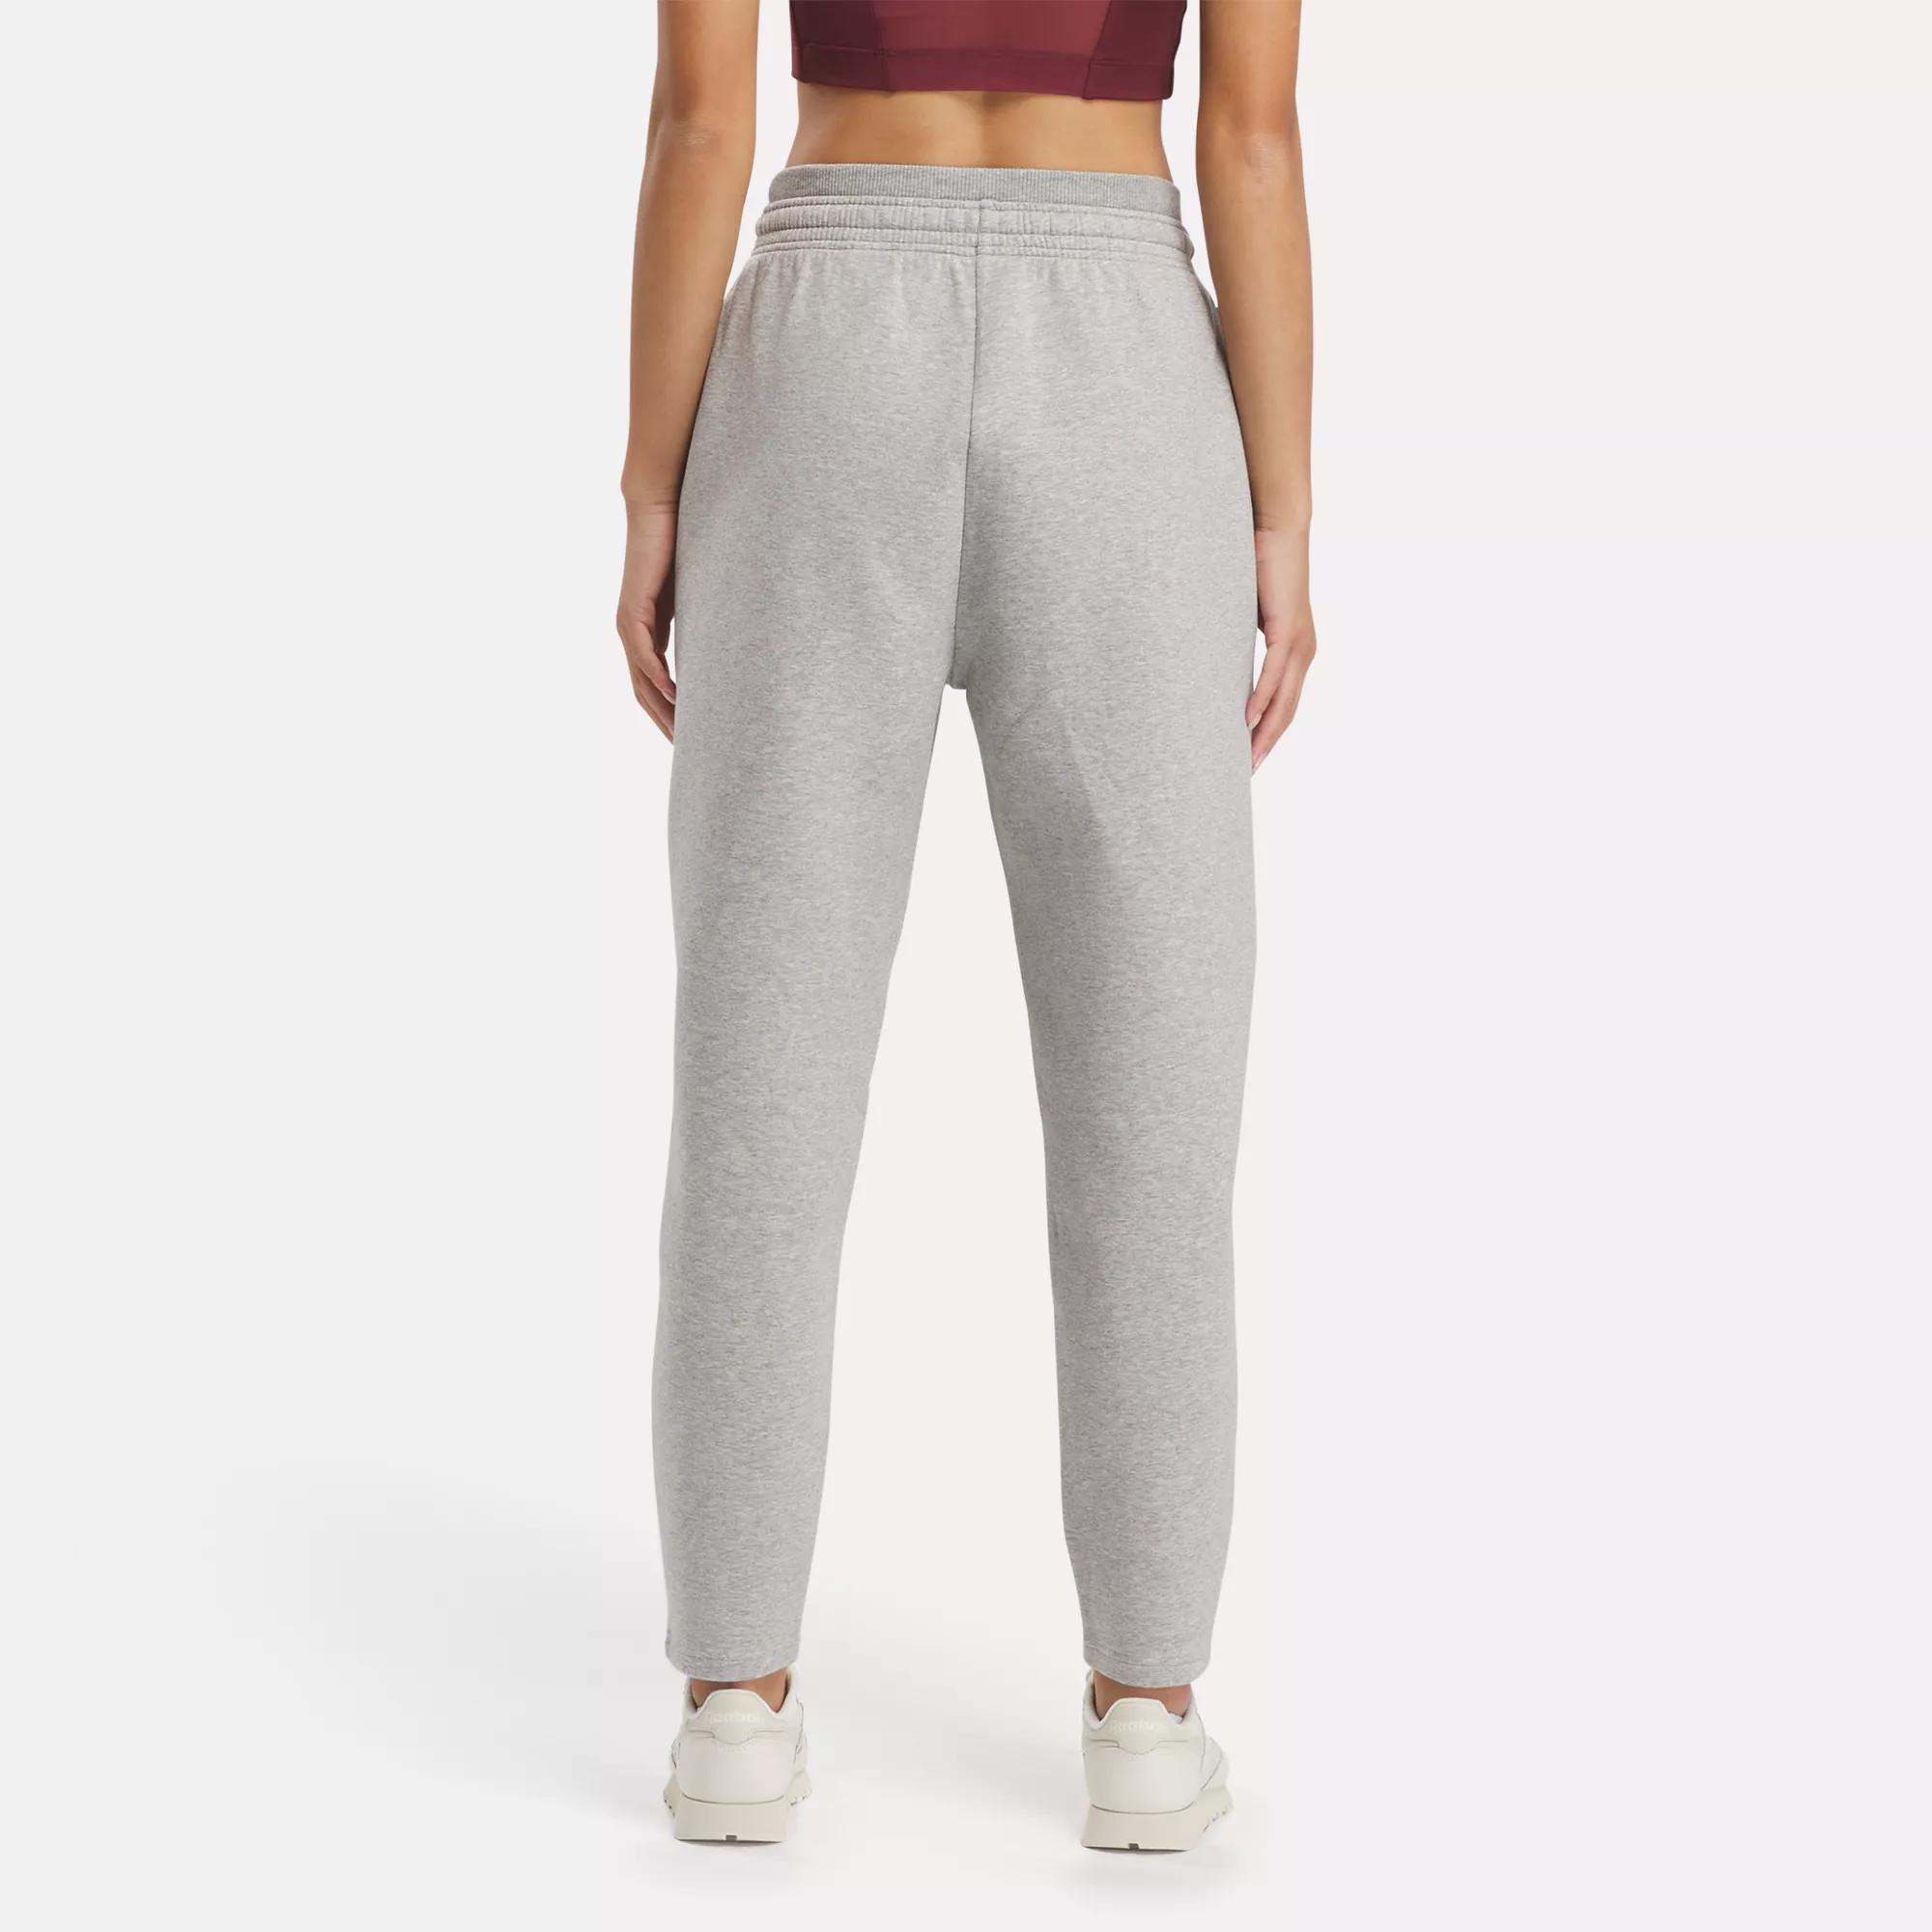 DreamBlend Cotton Knit Pants - Medium Grey Heather | Reebok